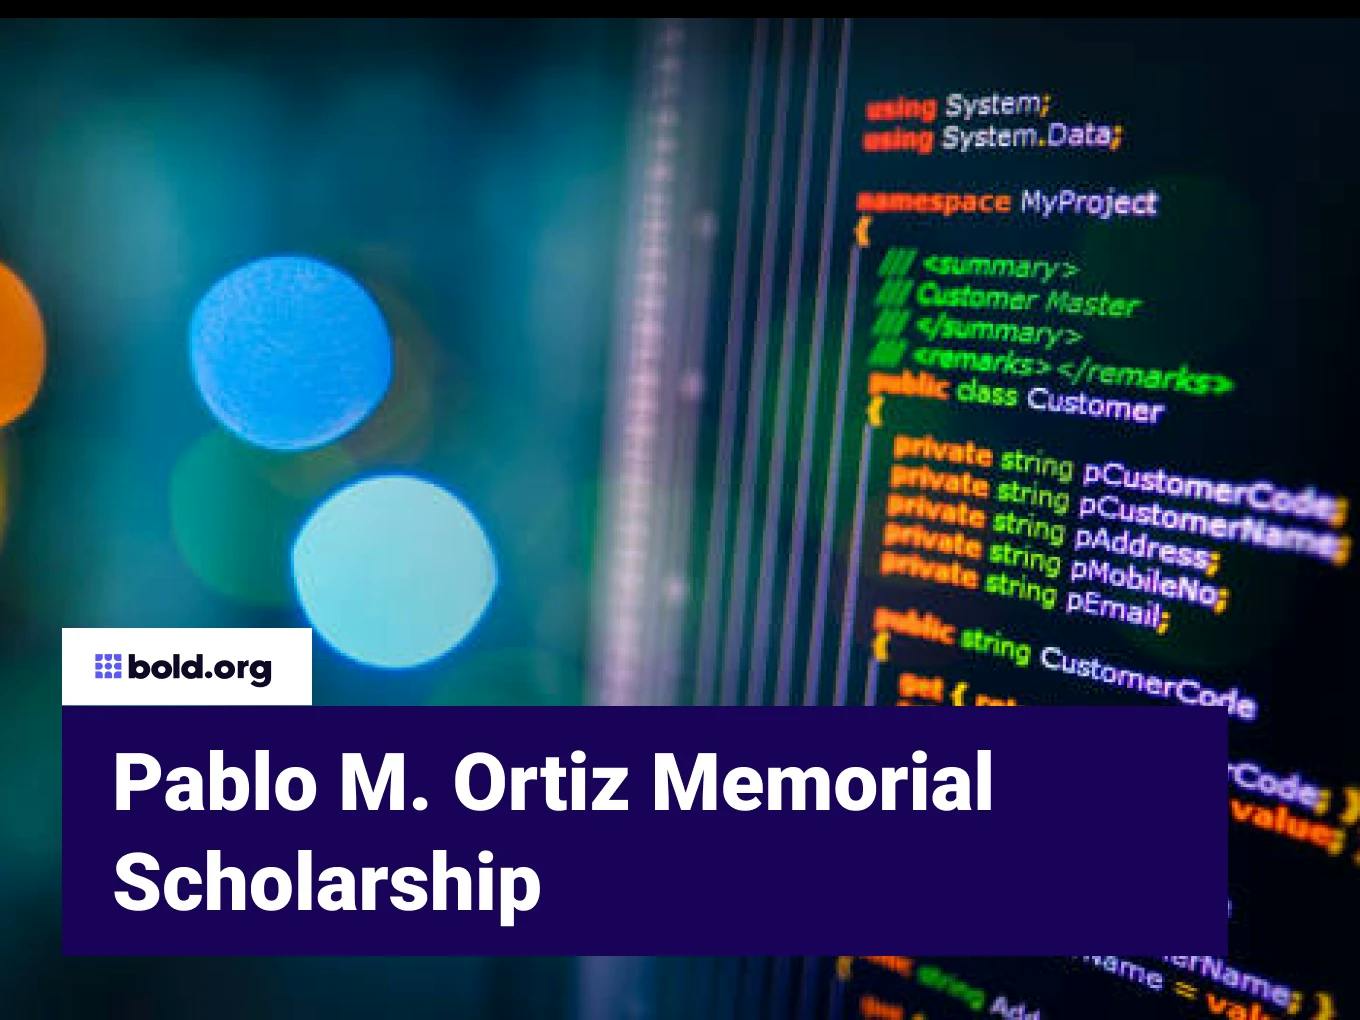 Pablo M. Ortiz Memorial Scholarship